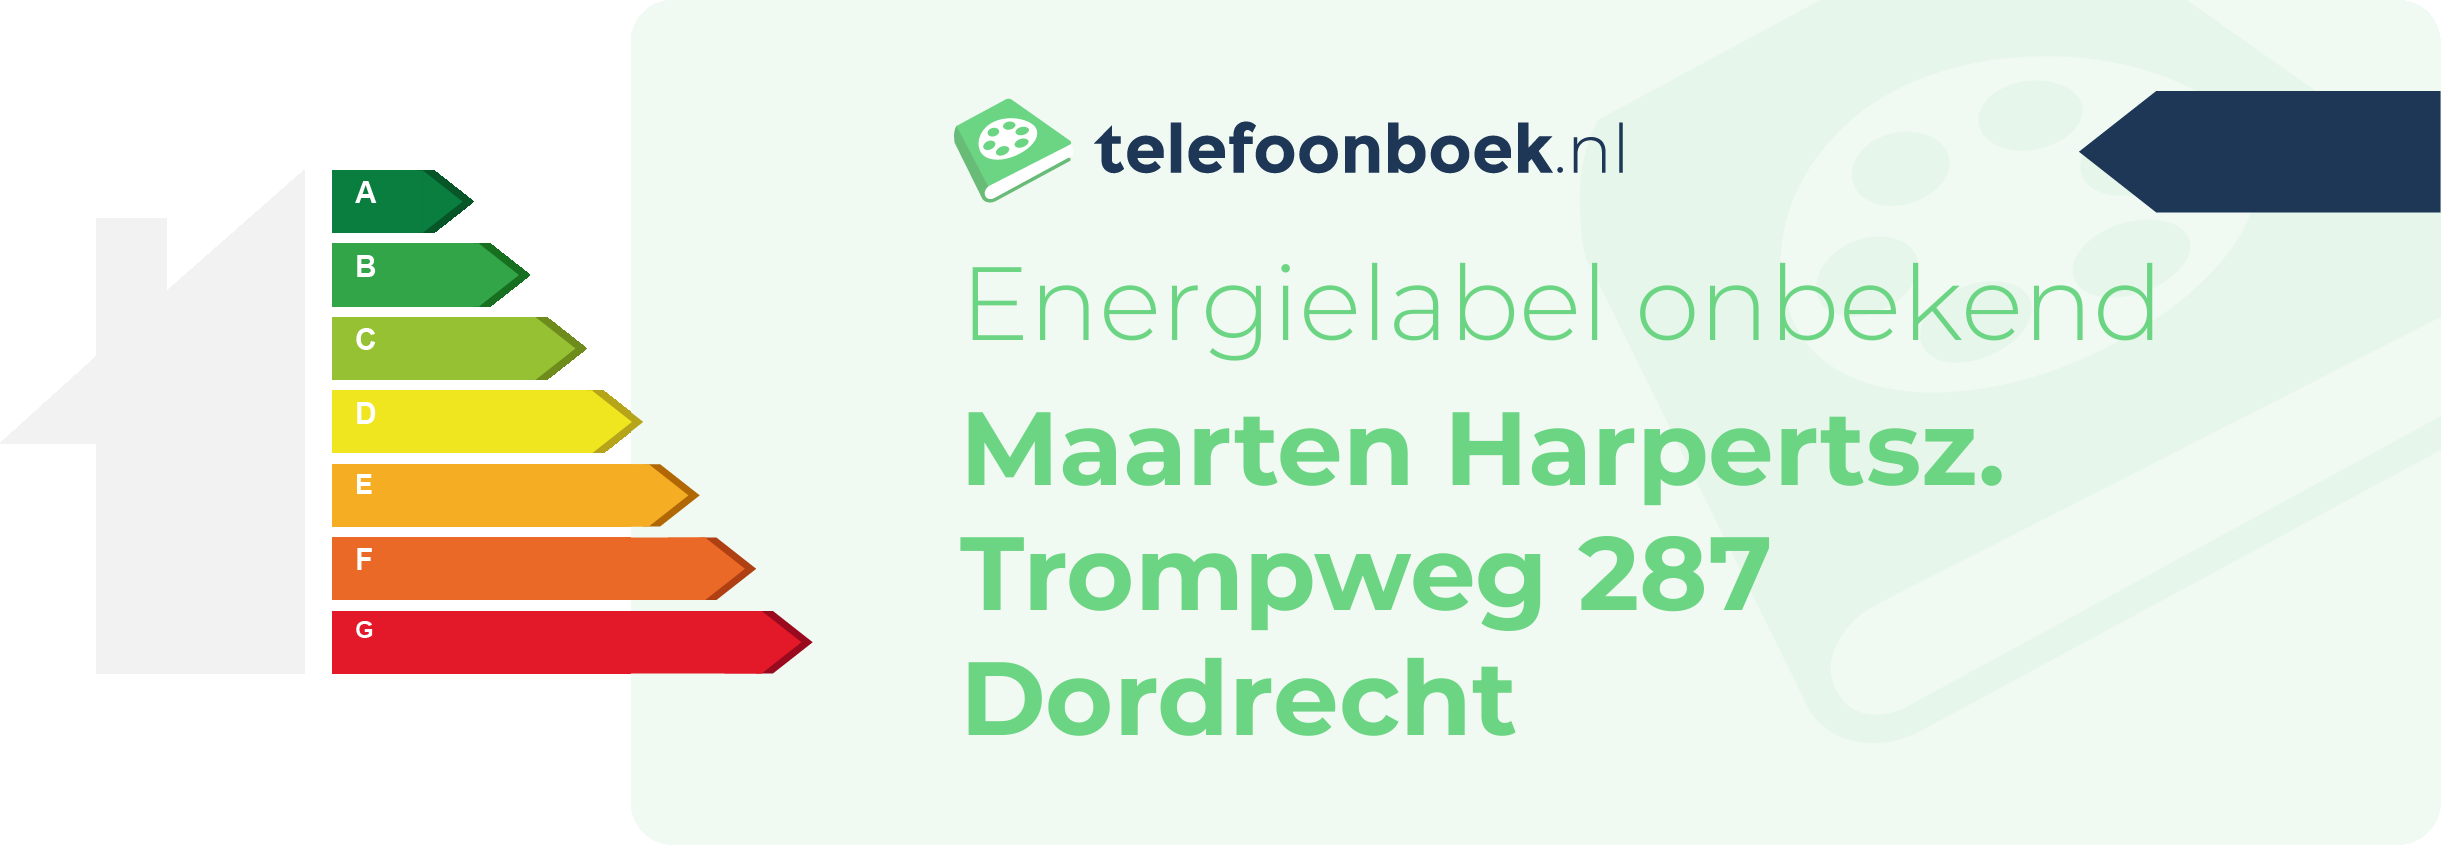 Energielabel Maarten Harpertsz. Trompweg 287 Dordrecht